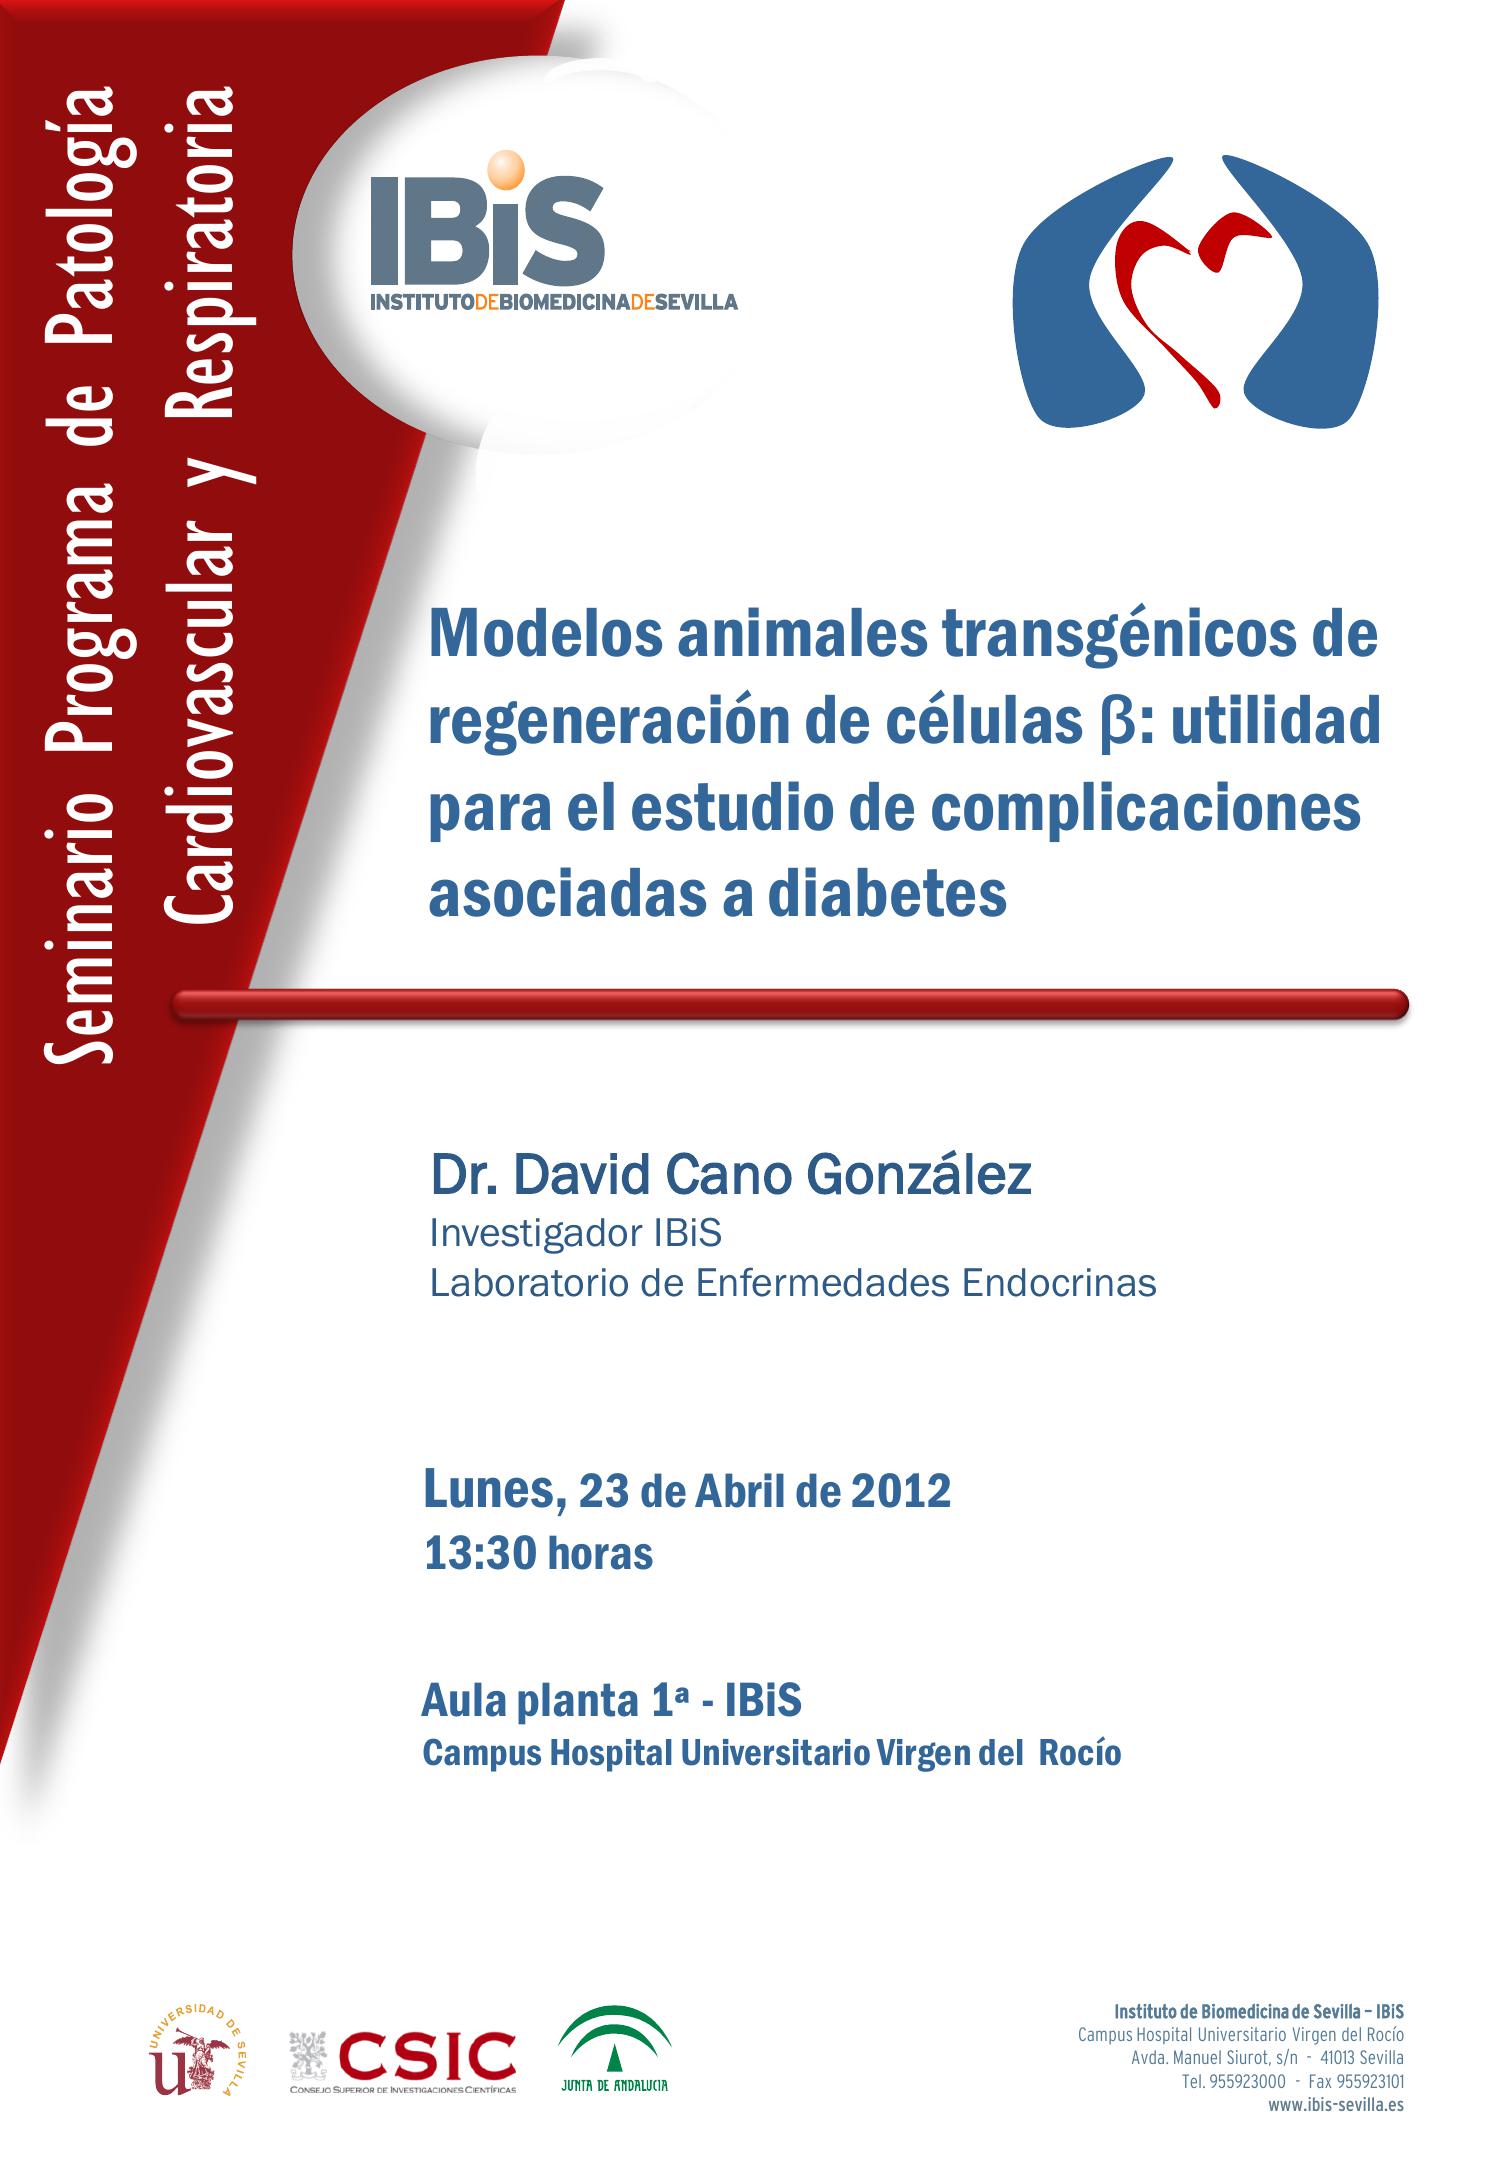 Poster: Modelos animales transgénicos de regeneración de células ß: utilidad para el estudio de complicaciones asociadas a diabetes.